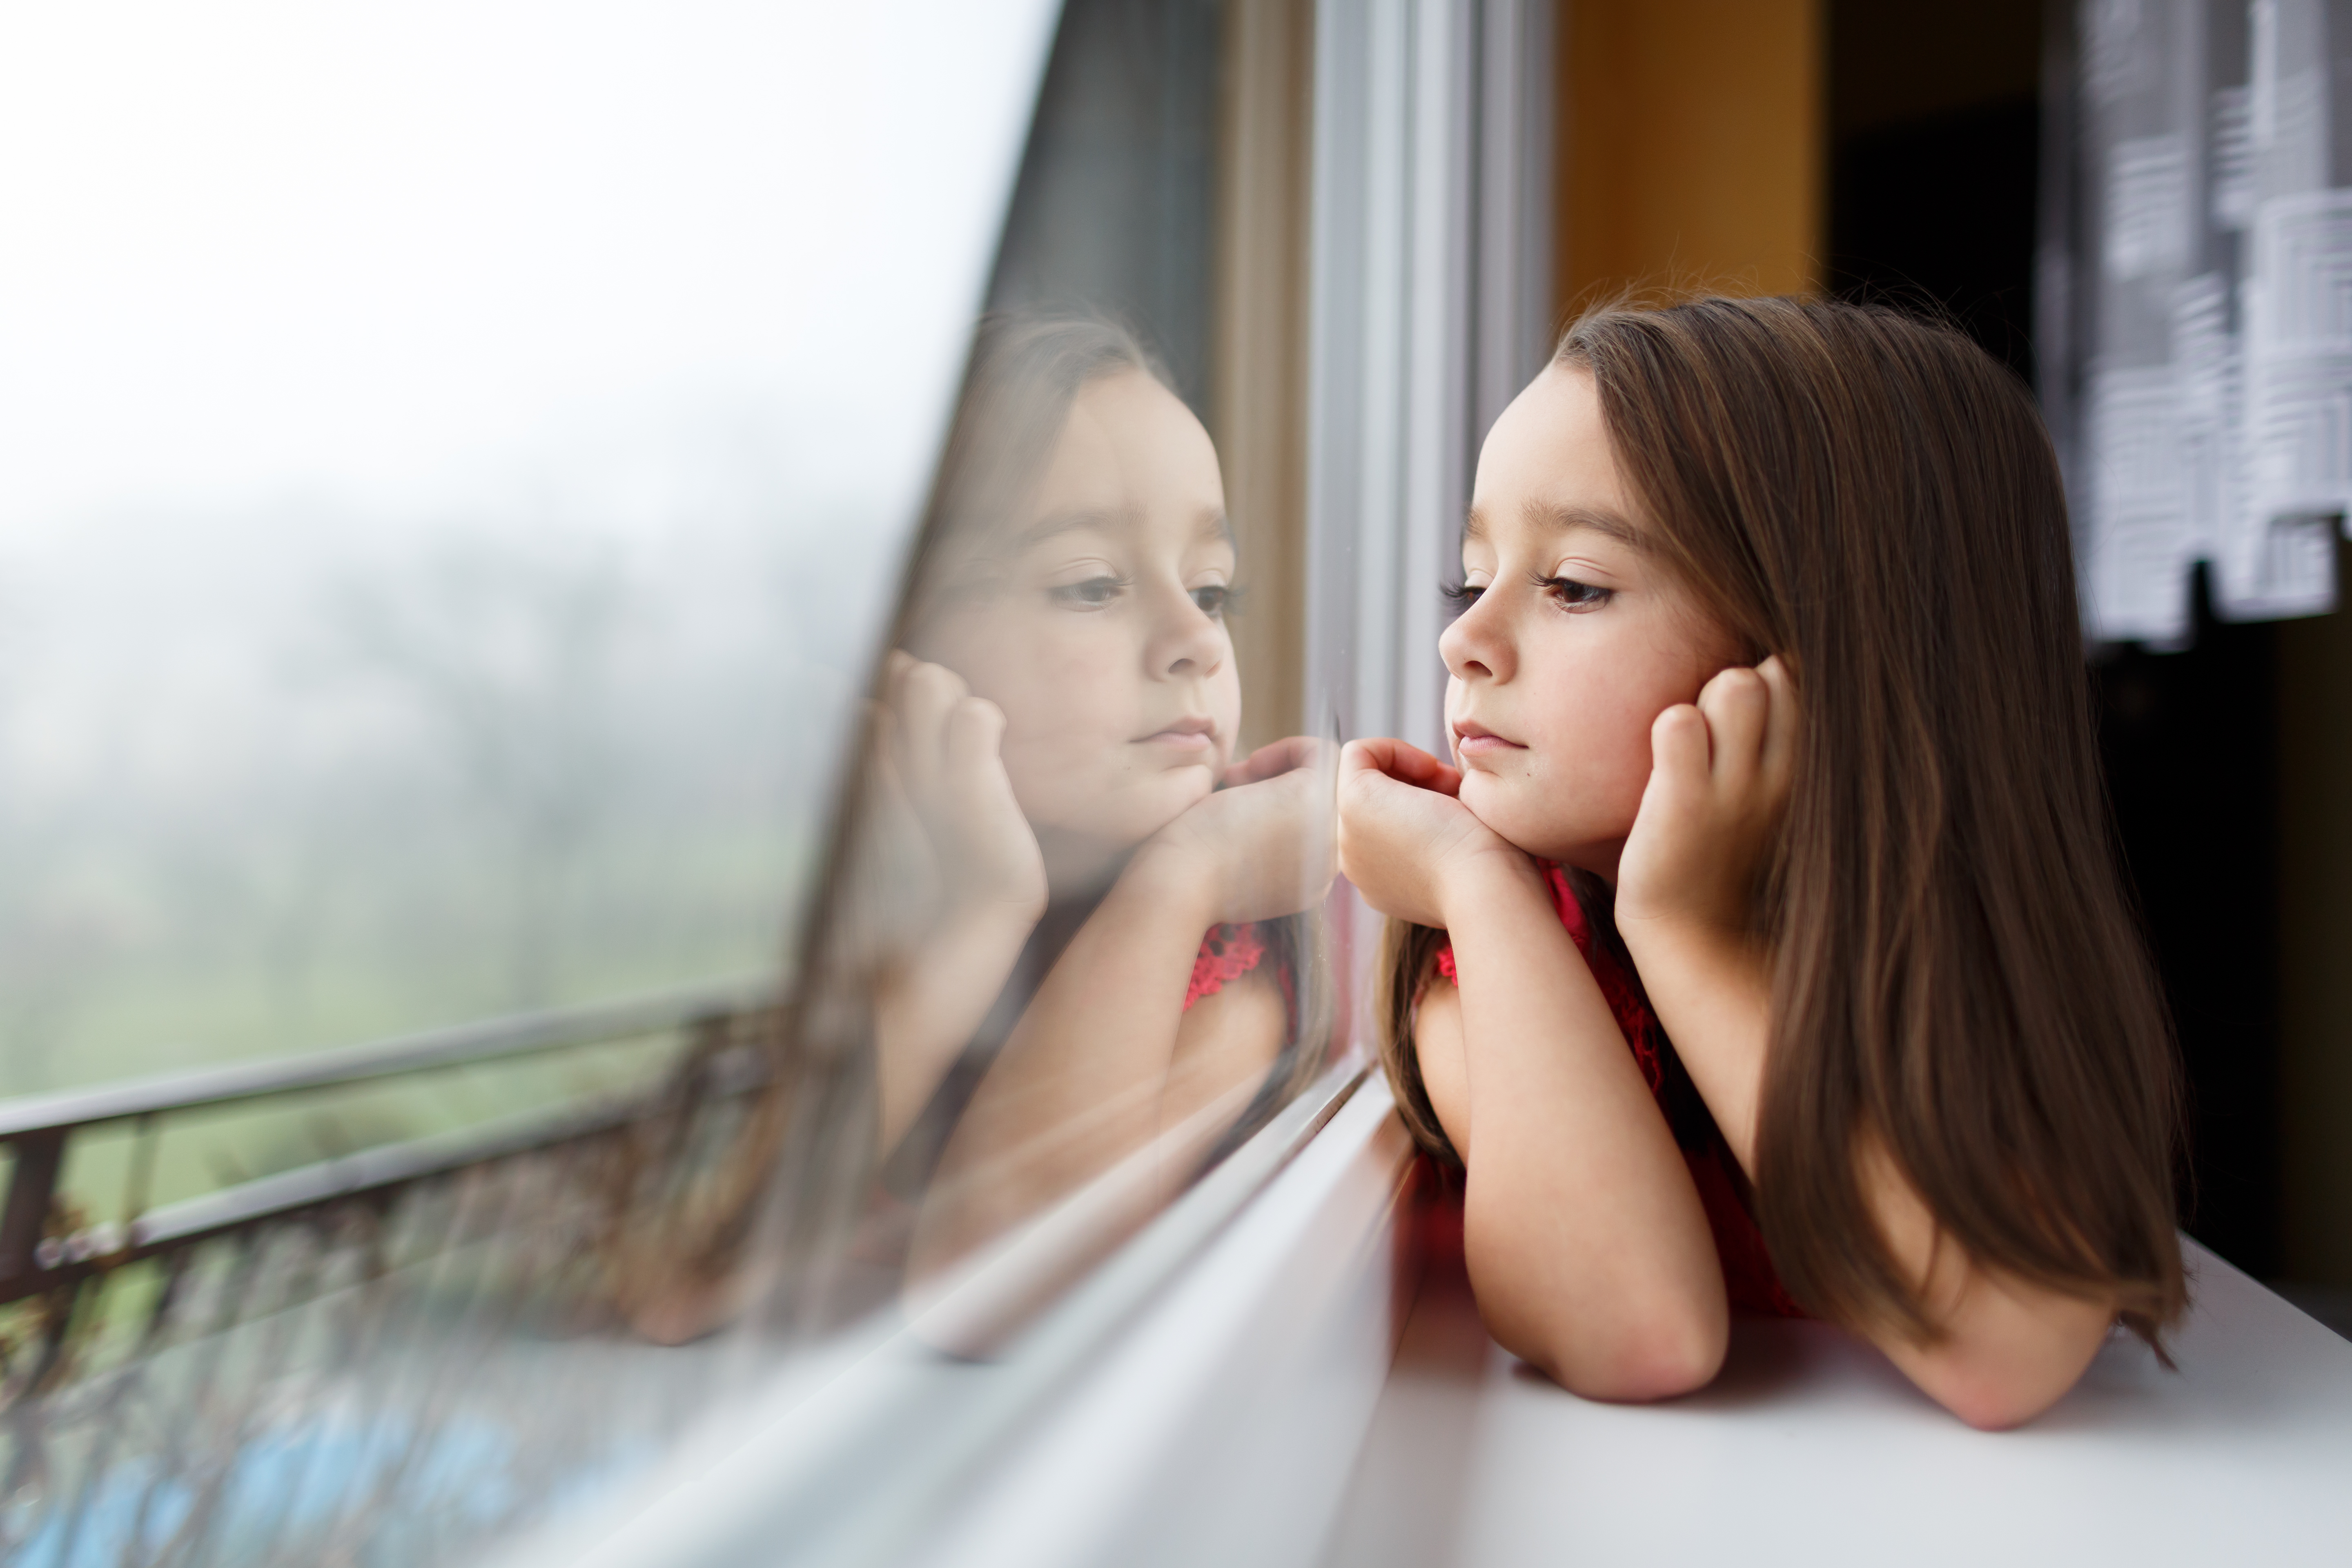 Kleines Mädchen schaut aus dem Fenster | Quelle: Shutterstock